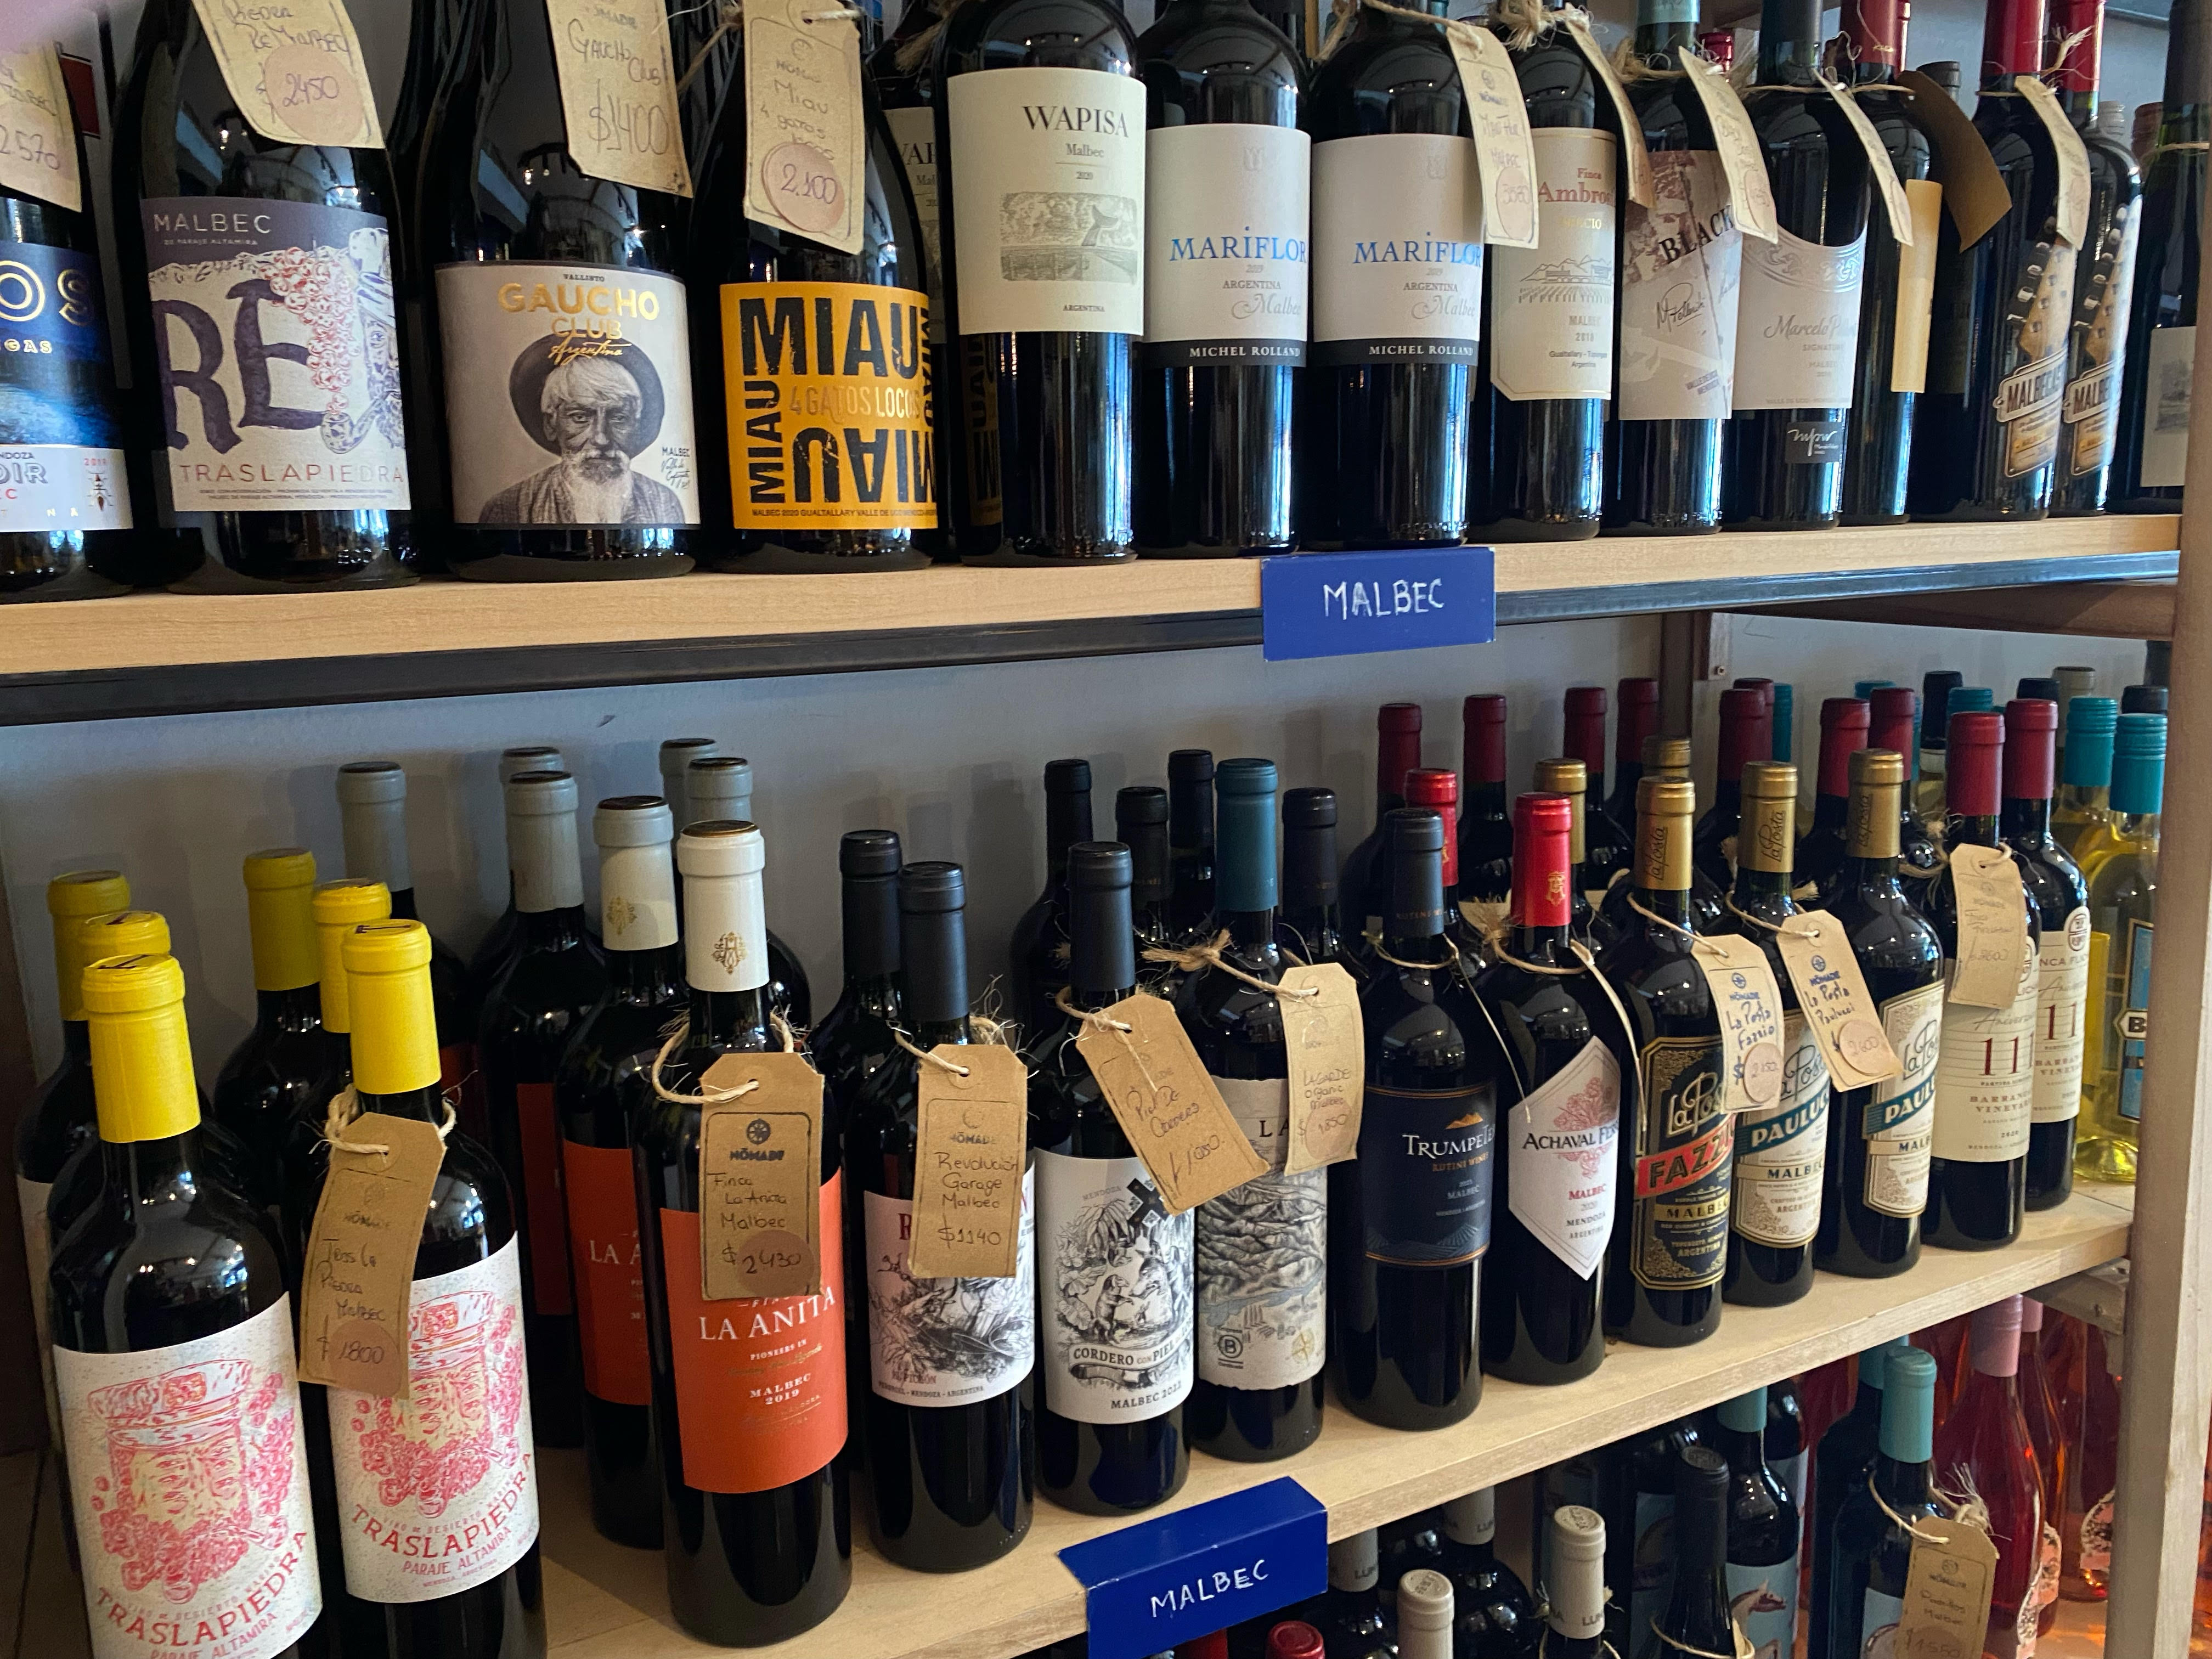 La diversidad de las etiquetas refleja el gran momento de la industria vitivinícola en general y de algunas bodegas en particular